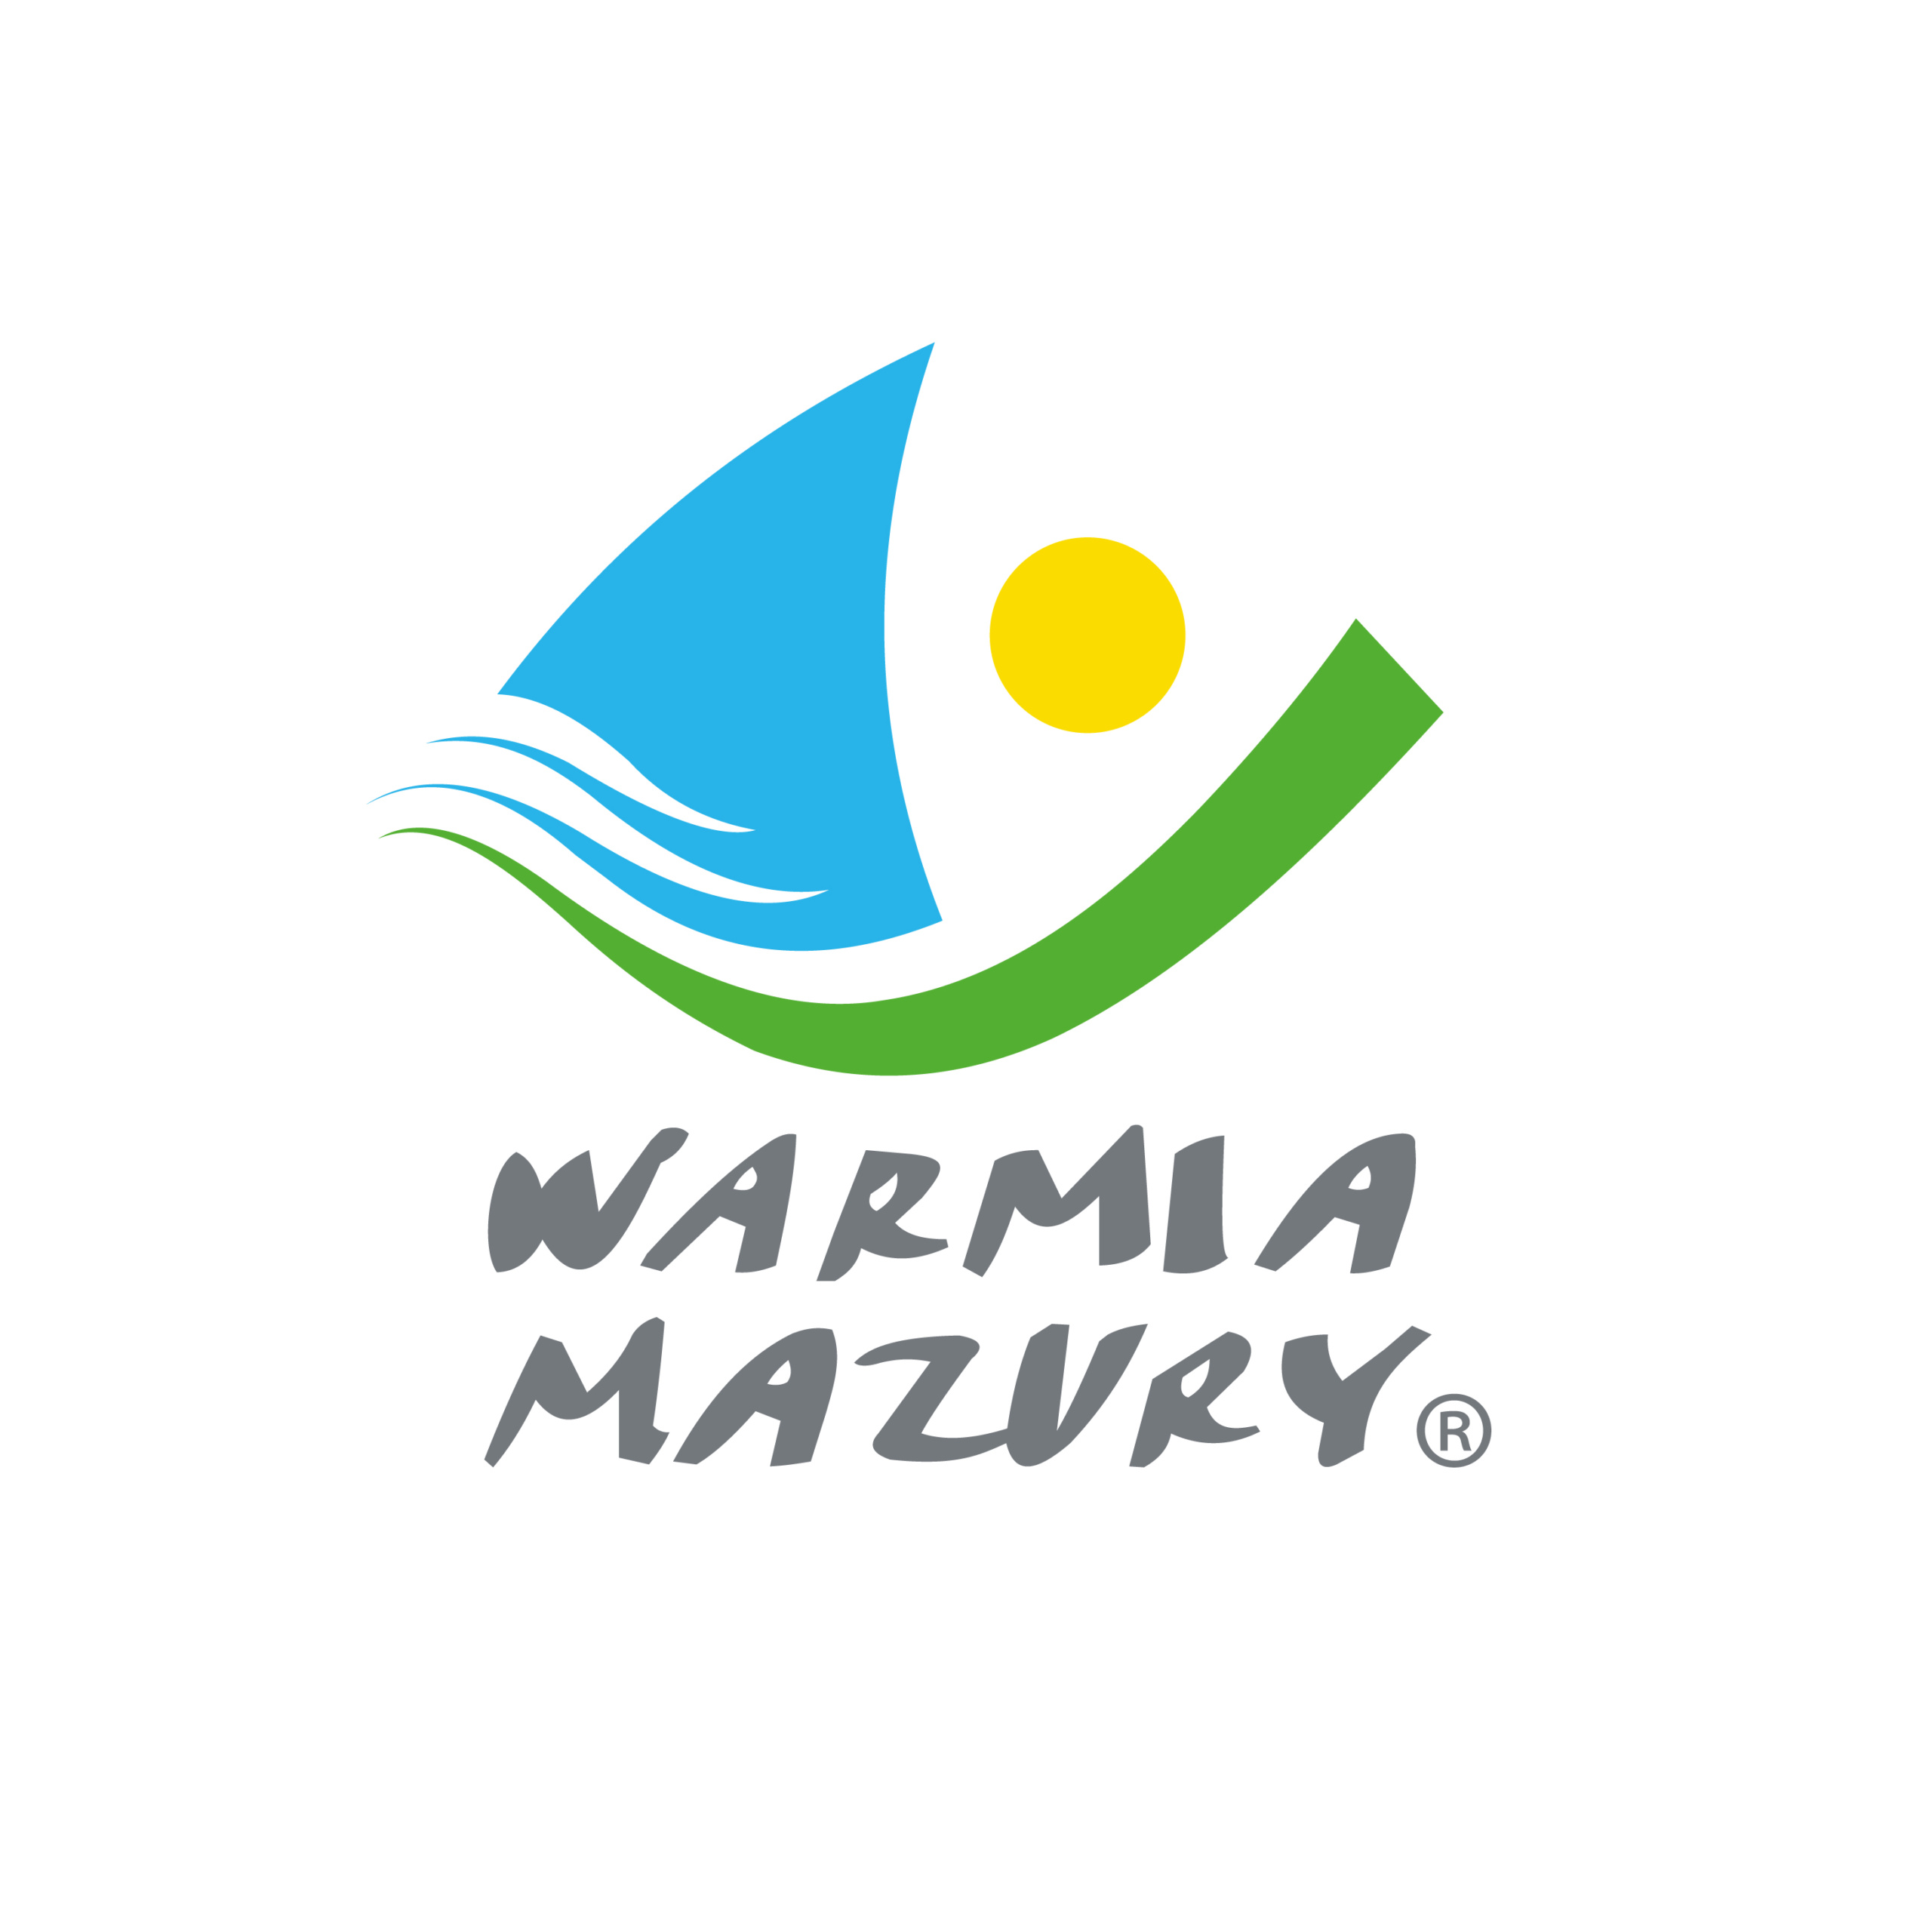 Warmińsko-Mazurskie Voivodeship
Main Partner